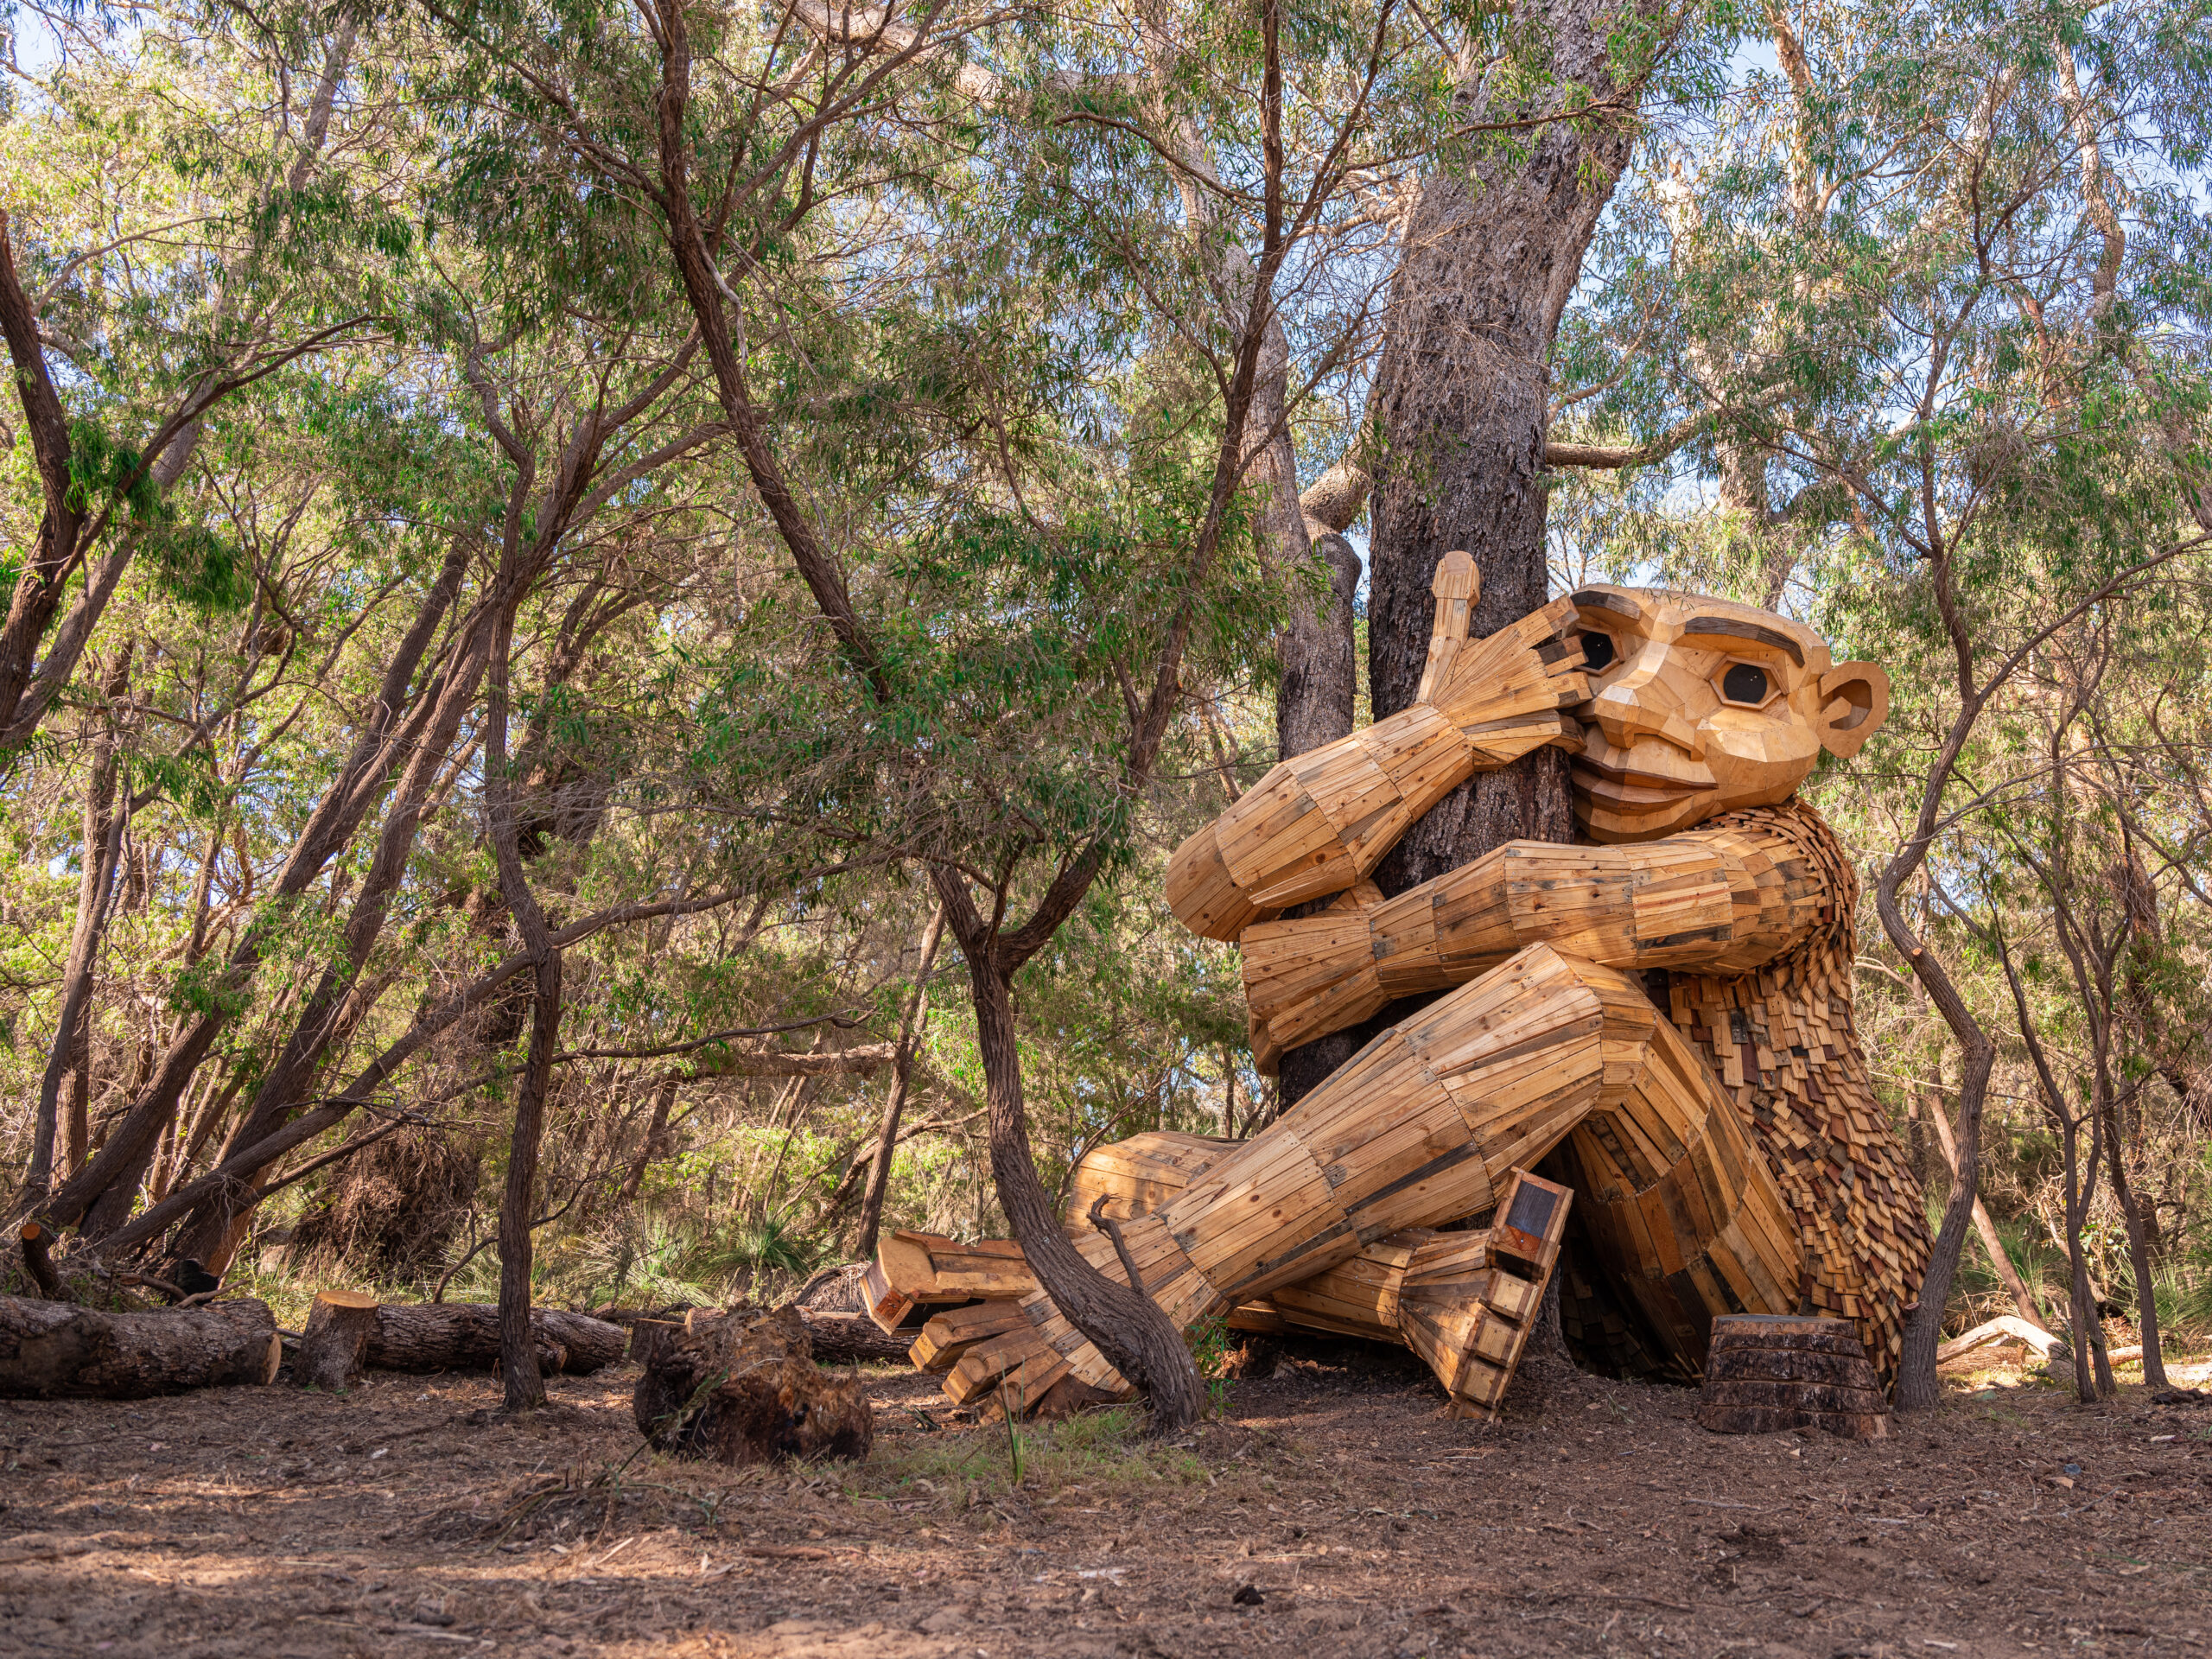 A giant wooden troll statue hugs a tree